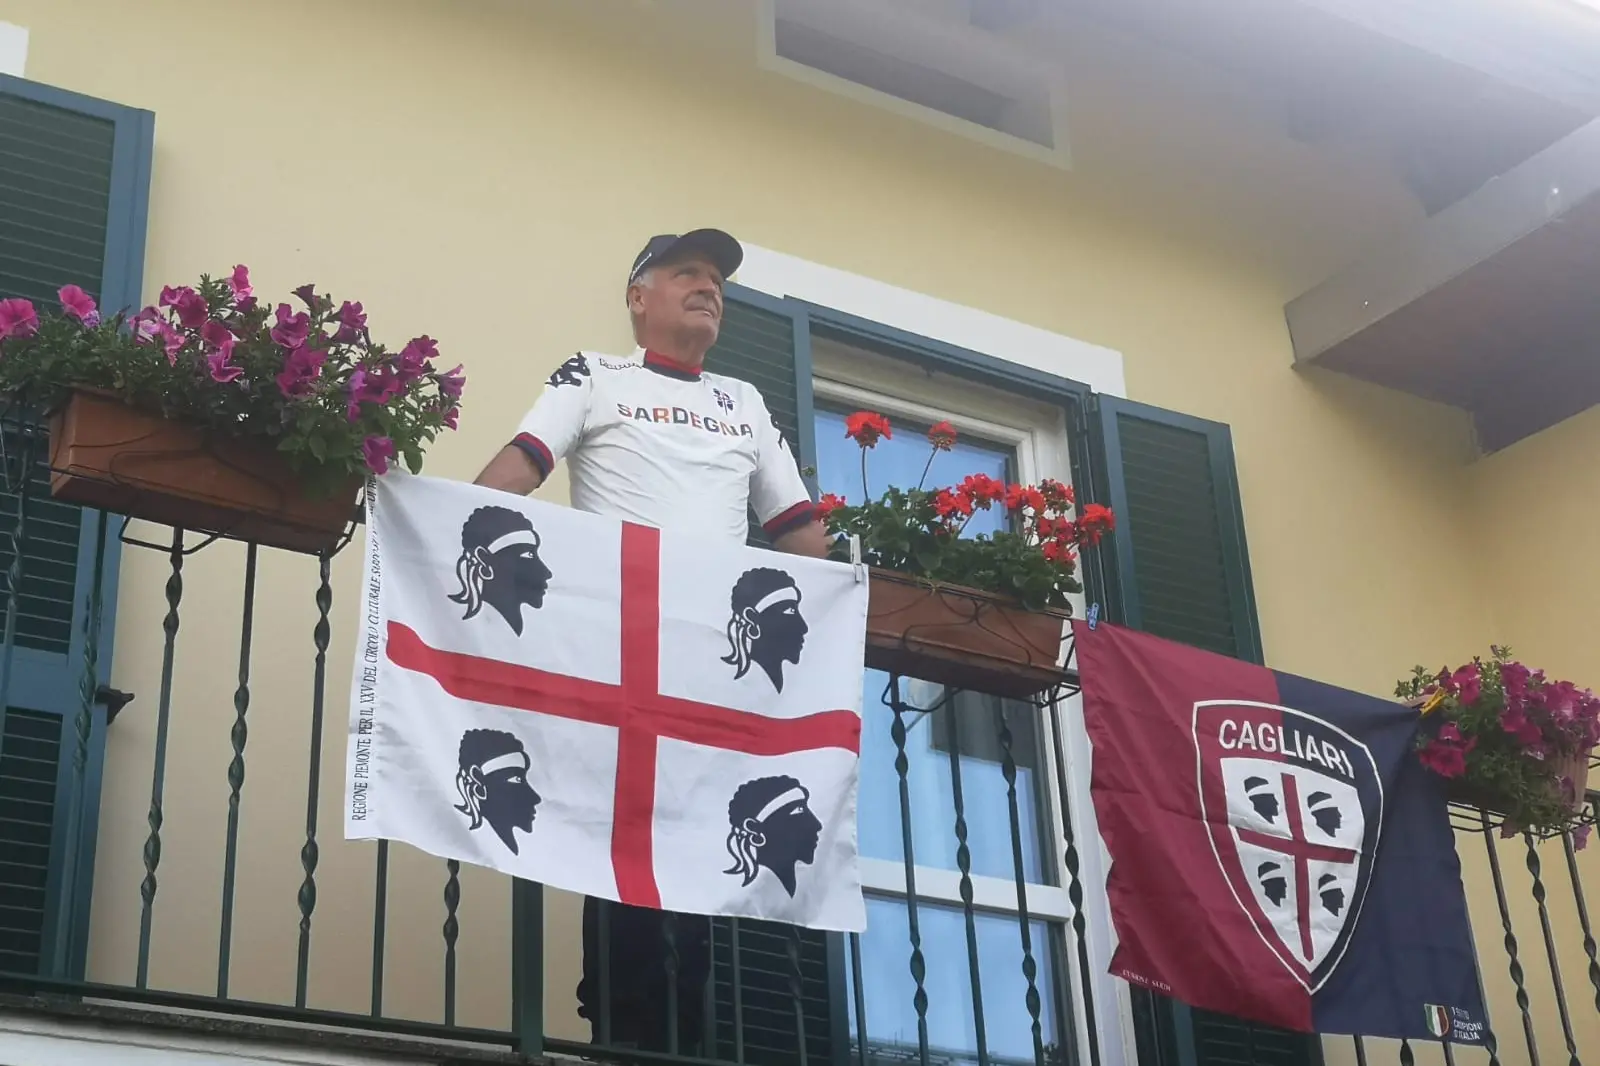 Le bandiere di un socio del circolo "Su Nuraghe" di Biella (foto concessa)